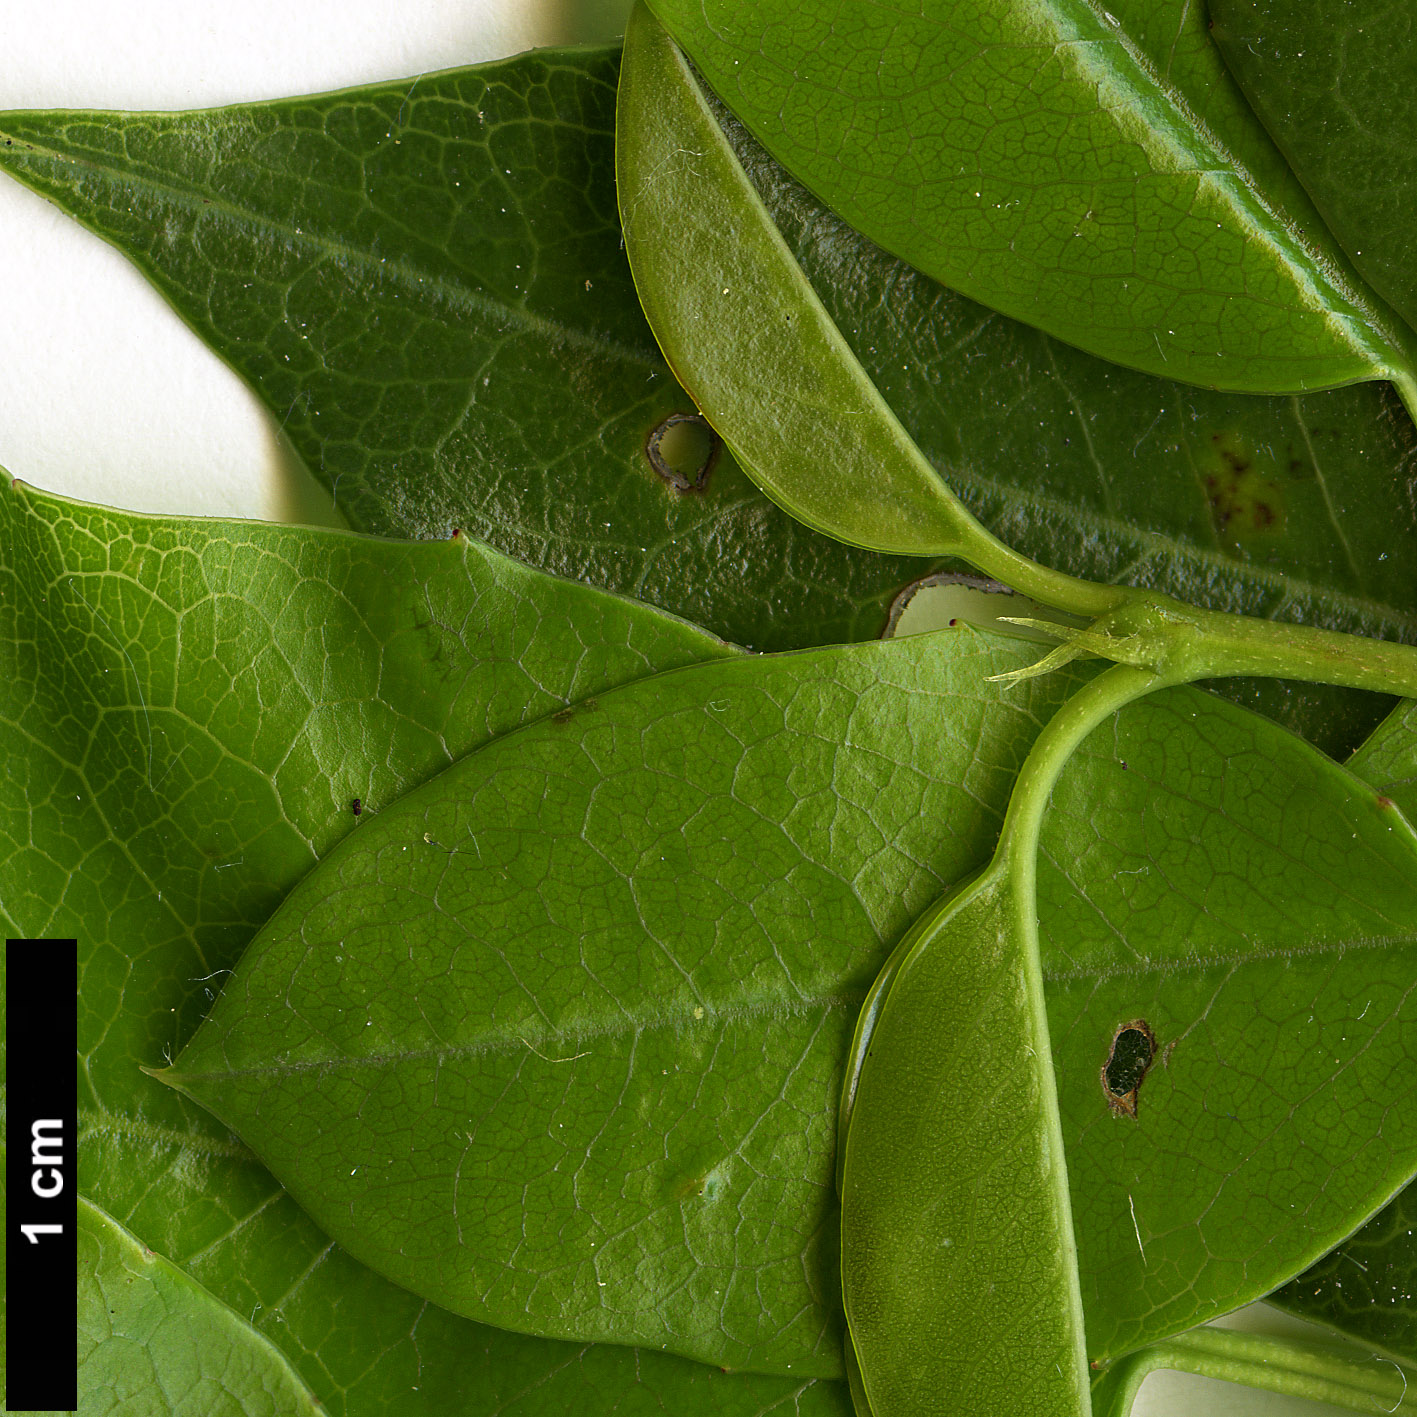 High resolution image: Family: Rosaceae - Genus: Prunus - Taxon: ilicifolia